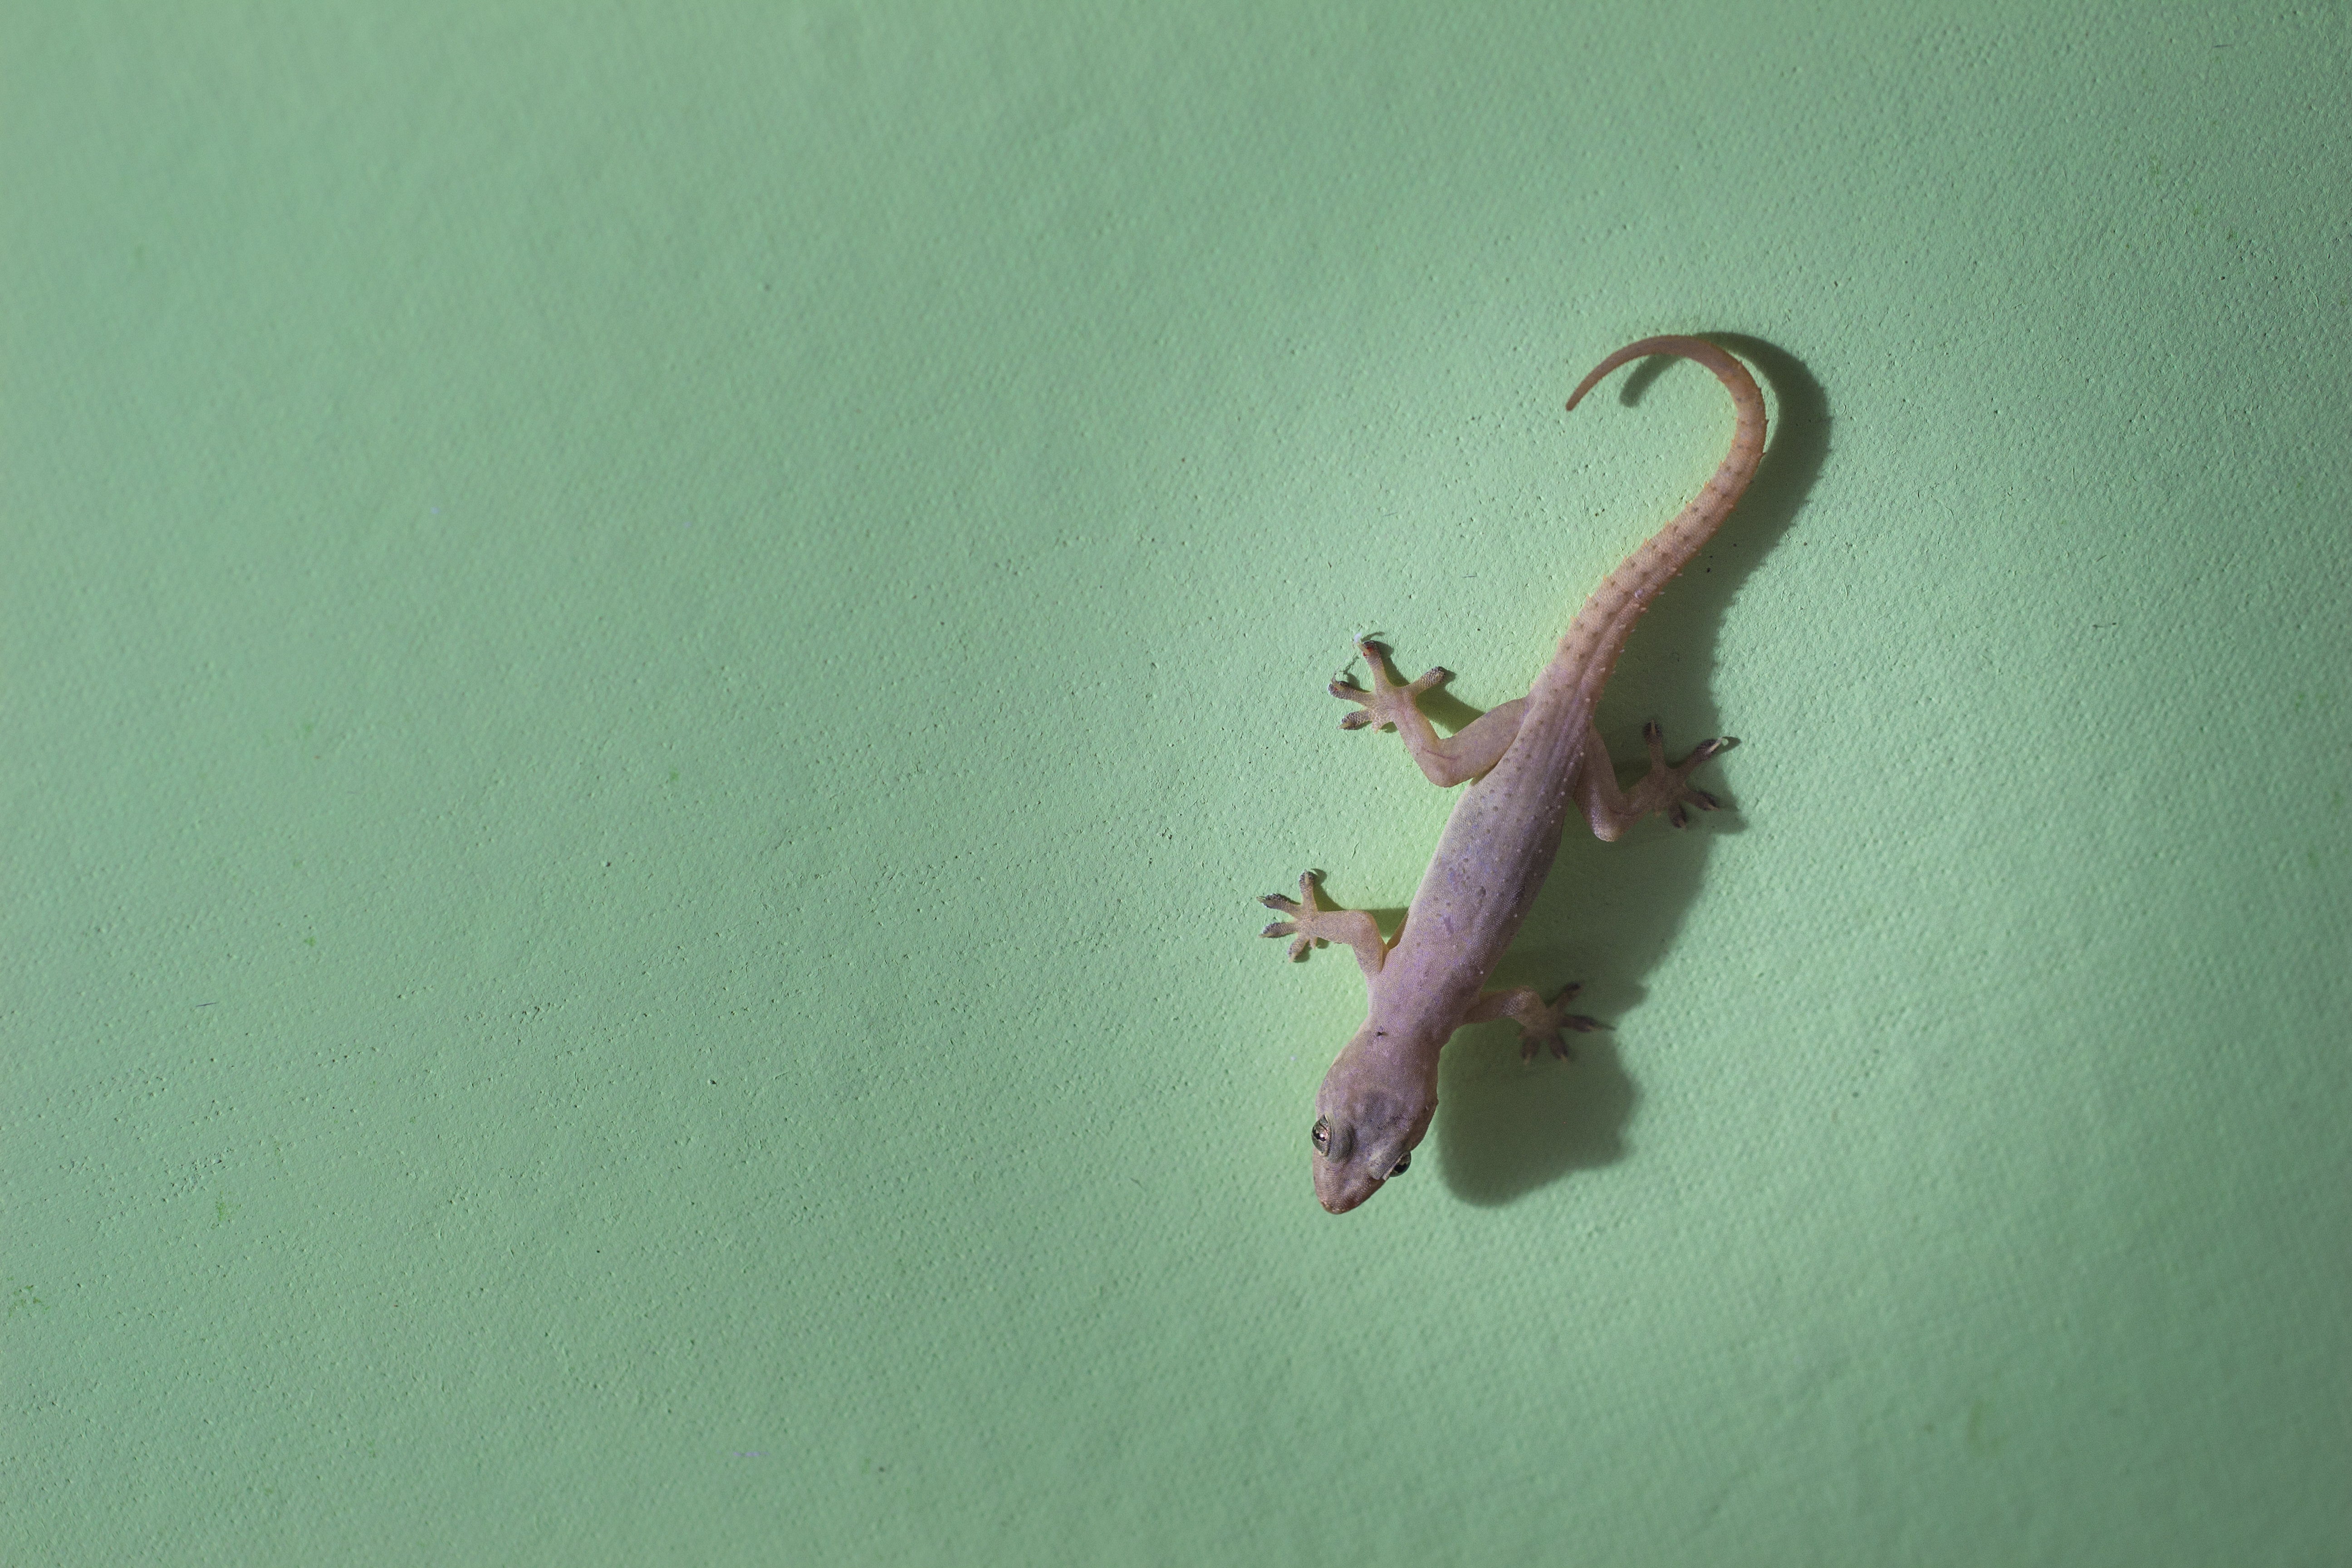 Strong grip on little Gecko 🦎